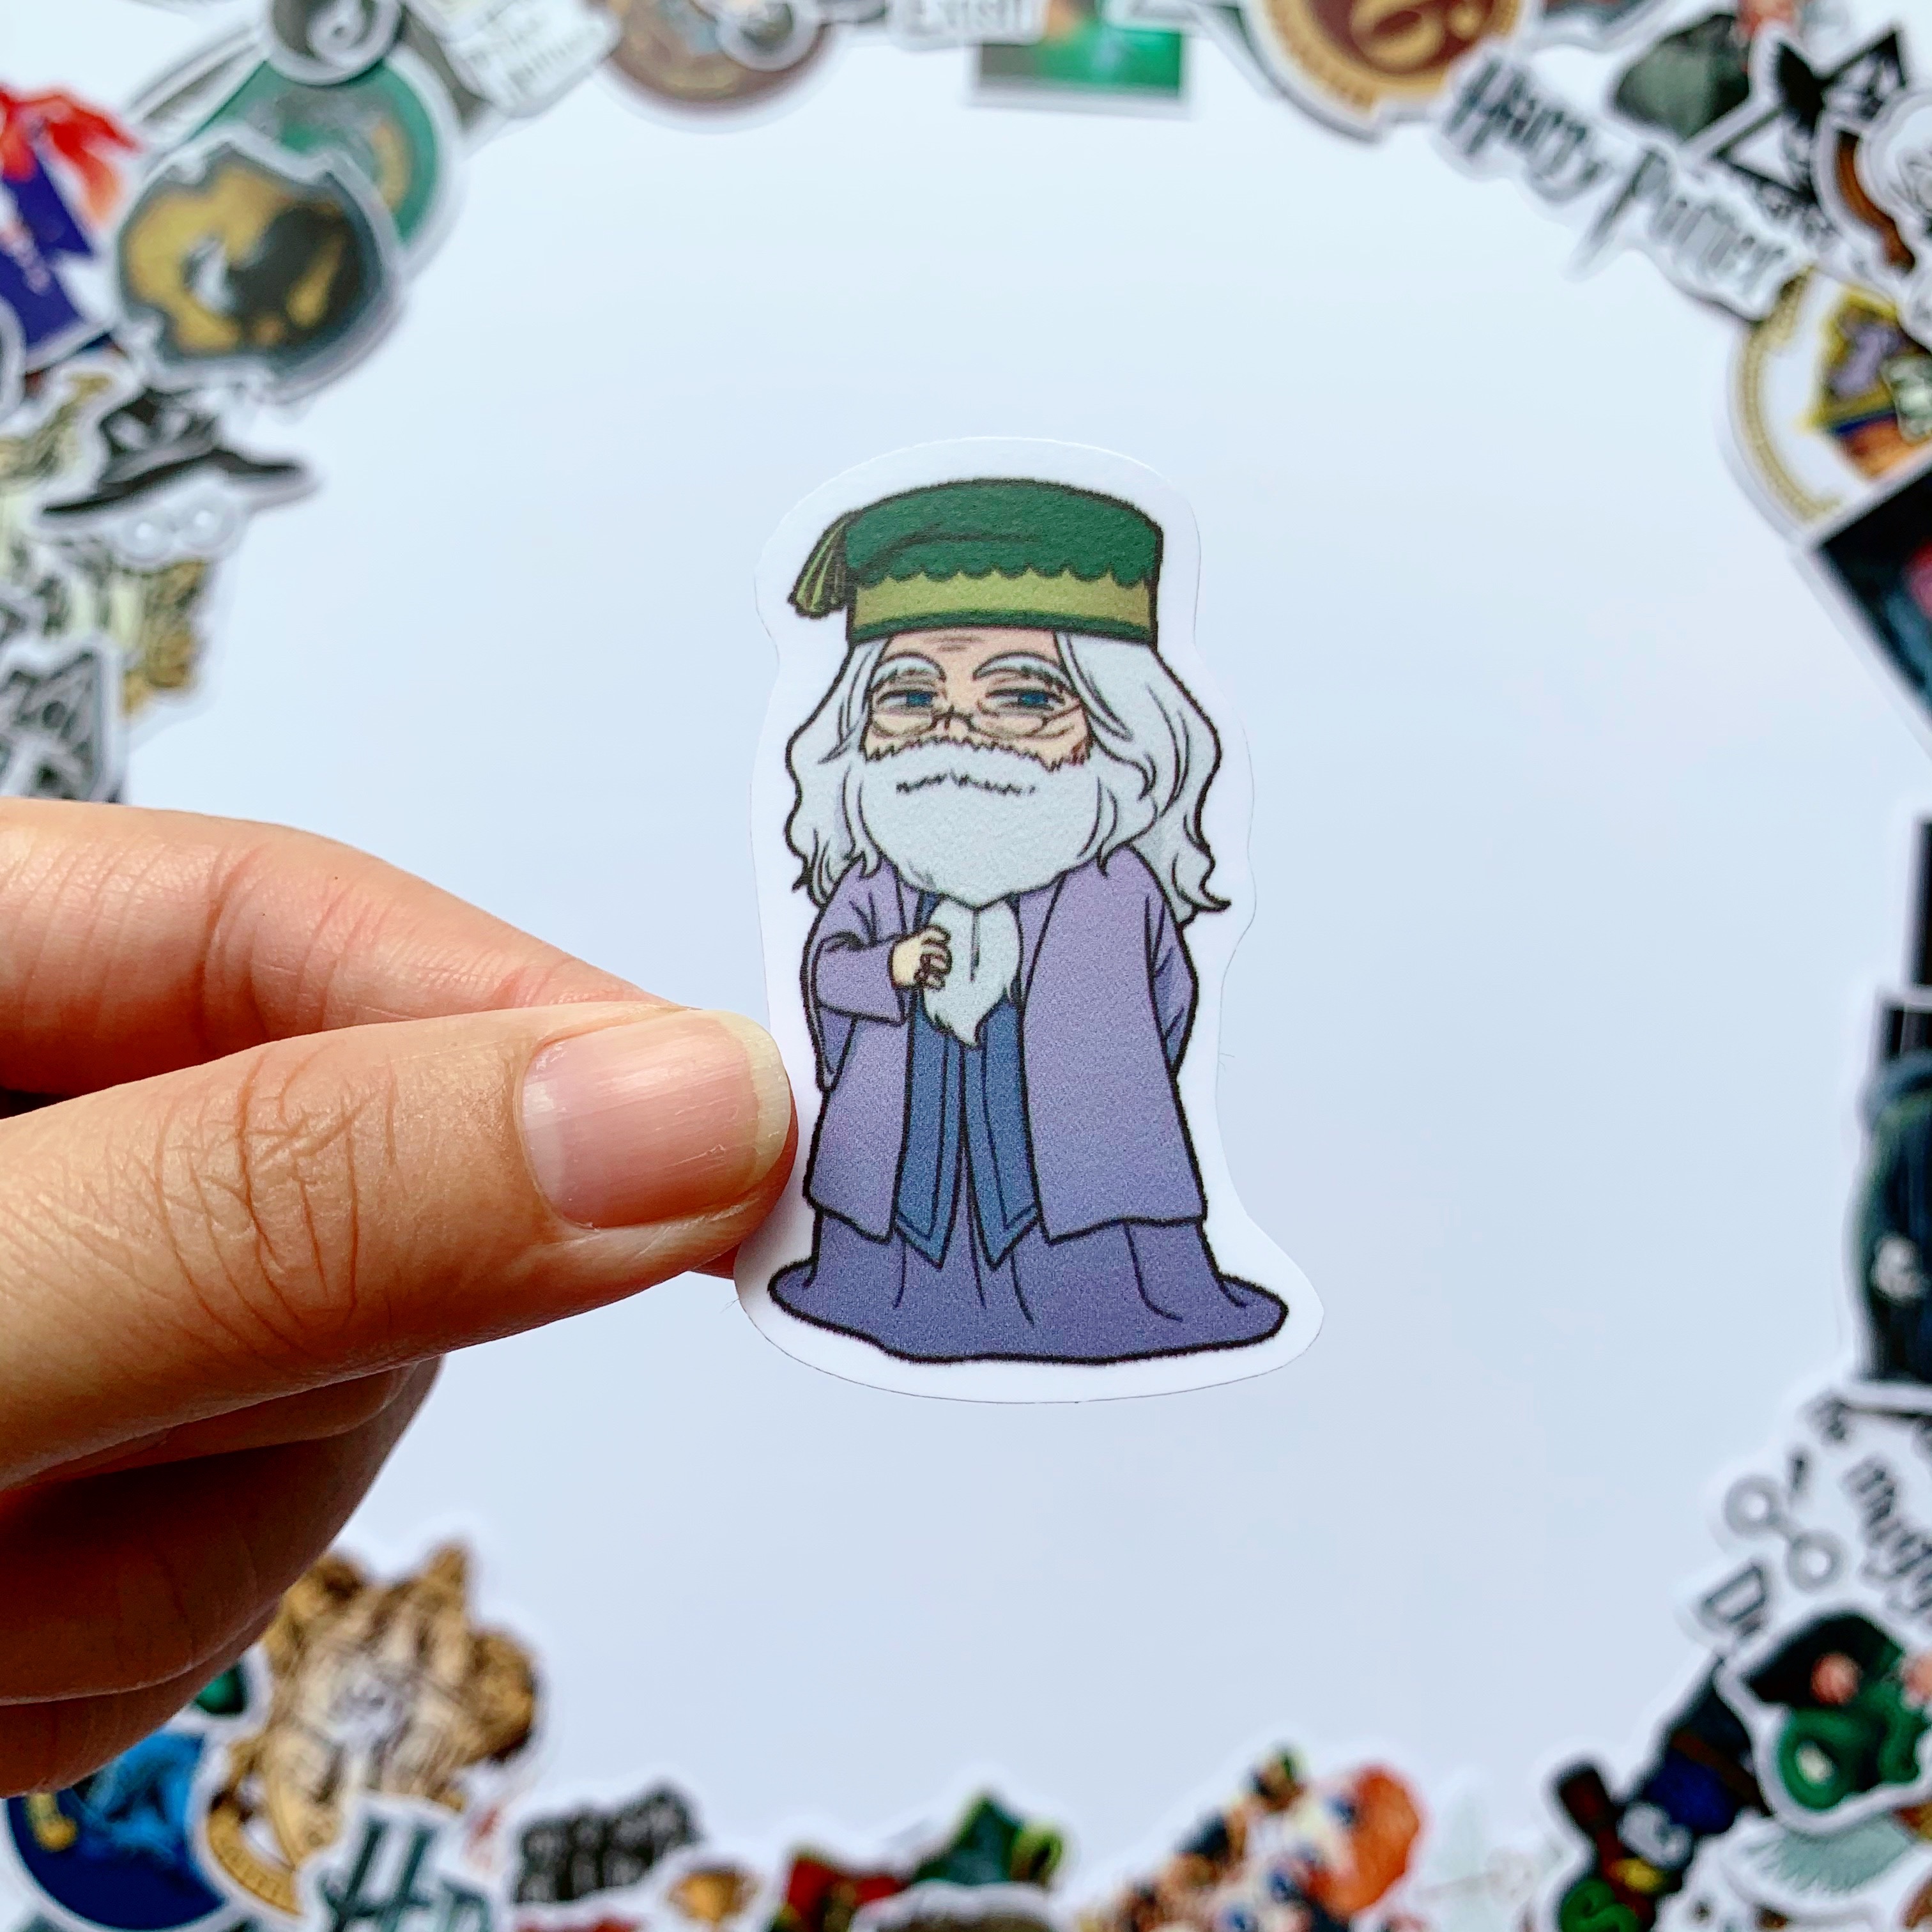 Sticker Harry Potter - Chất Liệu PVC Chất Lượng Cao Chống Nước - Kích Thước 4-8cm